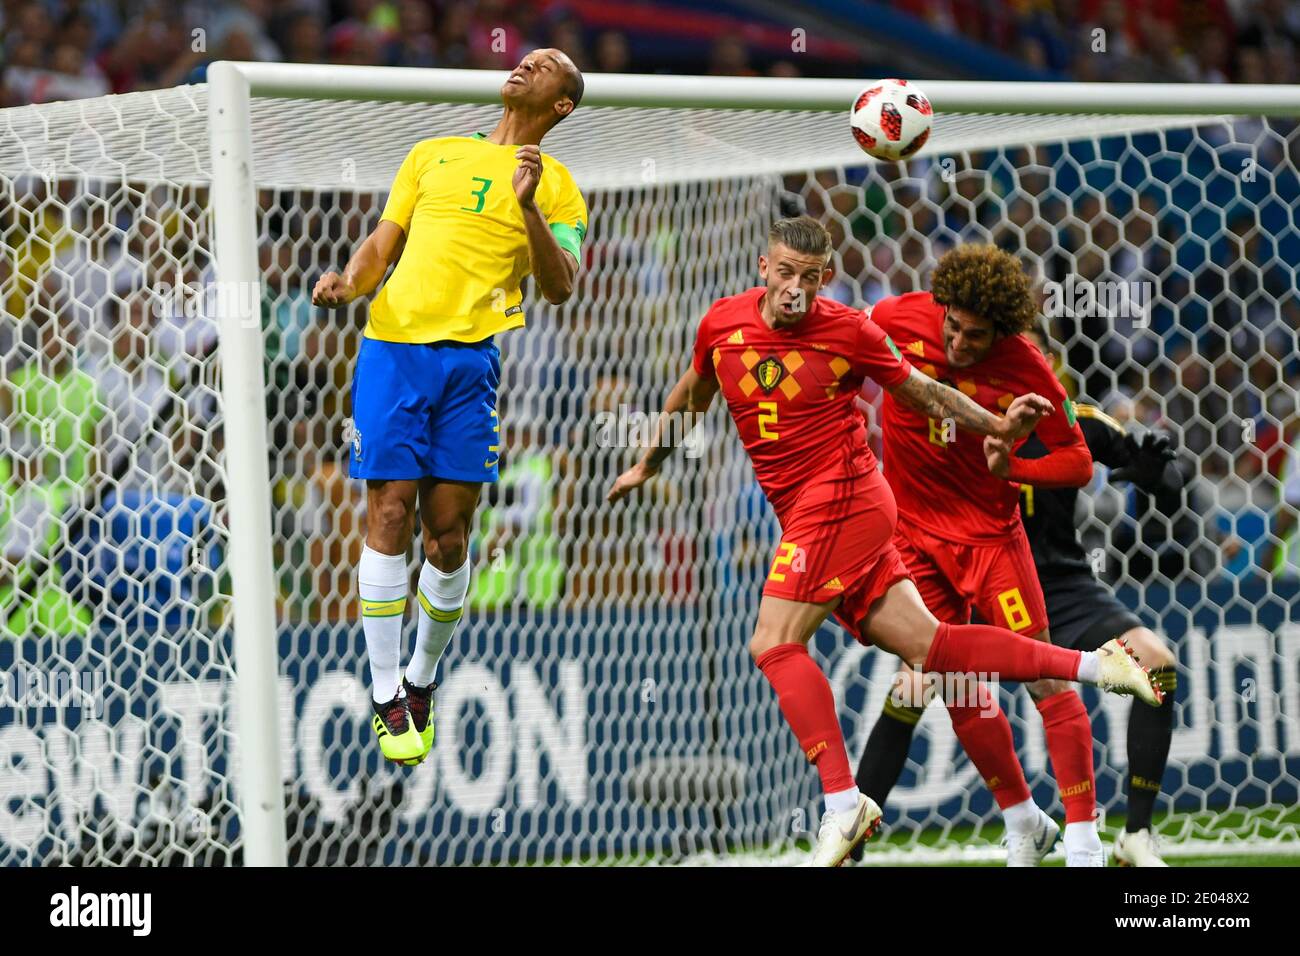 KAZAN, RUSSIA 6 July 2018: (L-R) Miranda of Brazil vs Toby Alderweireld & Marouane Fellaini of Belgium during the 2018 FIFA World Cup Russia Quarter F Stock Photo